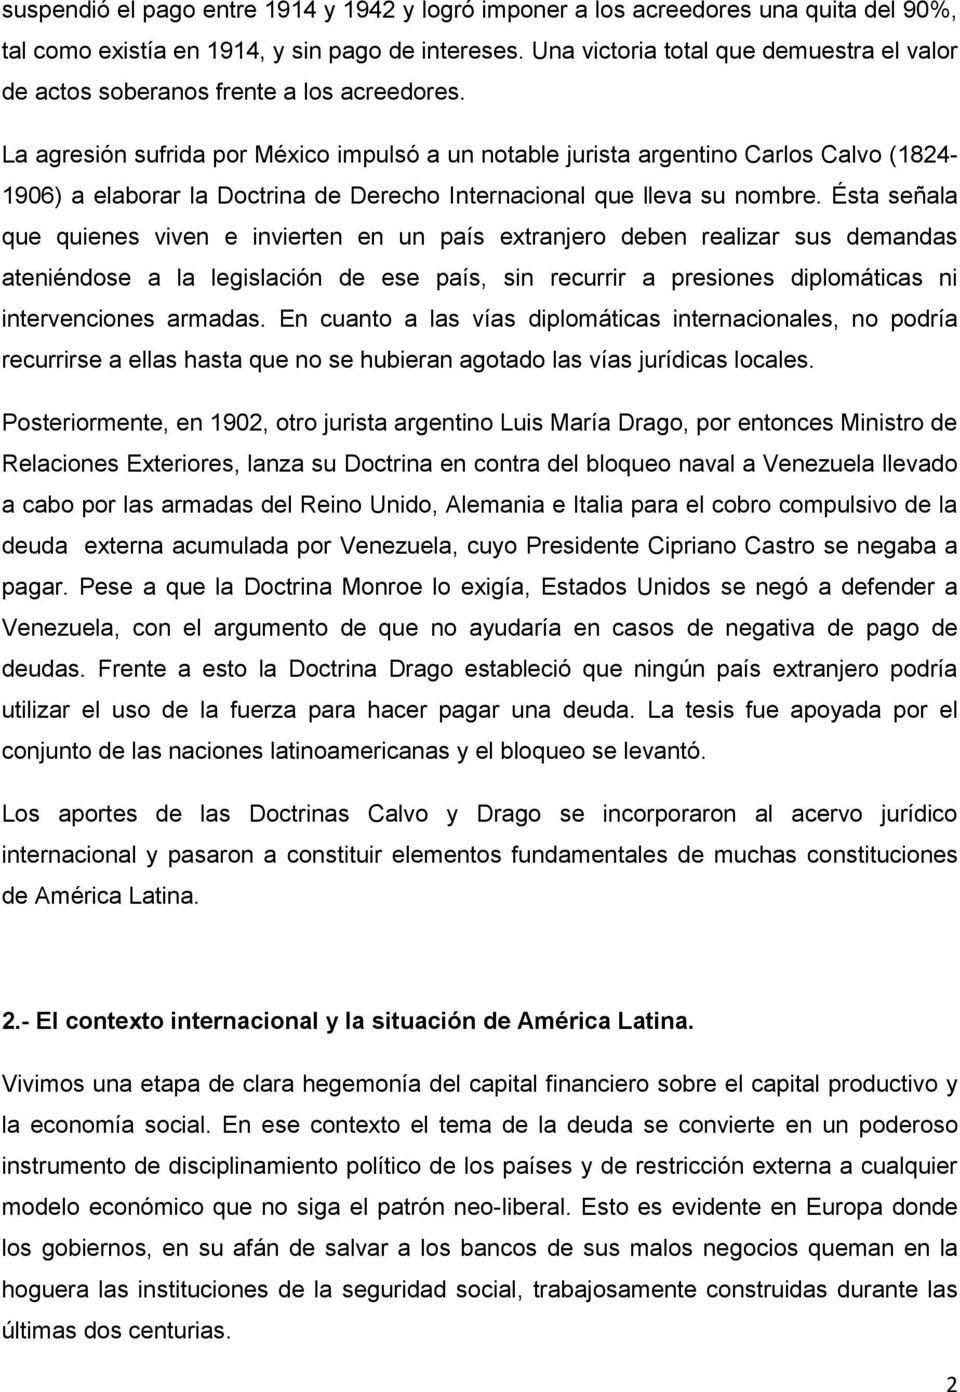 La agresión sufrida por México impulsó a un notable jurista argentino Carlos Calvo (1824-1906) a elaborar la Doctrina de Derecho Internacional que lleva su nombre.